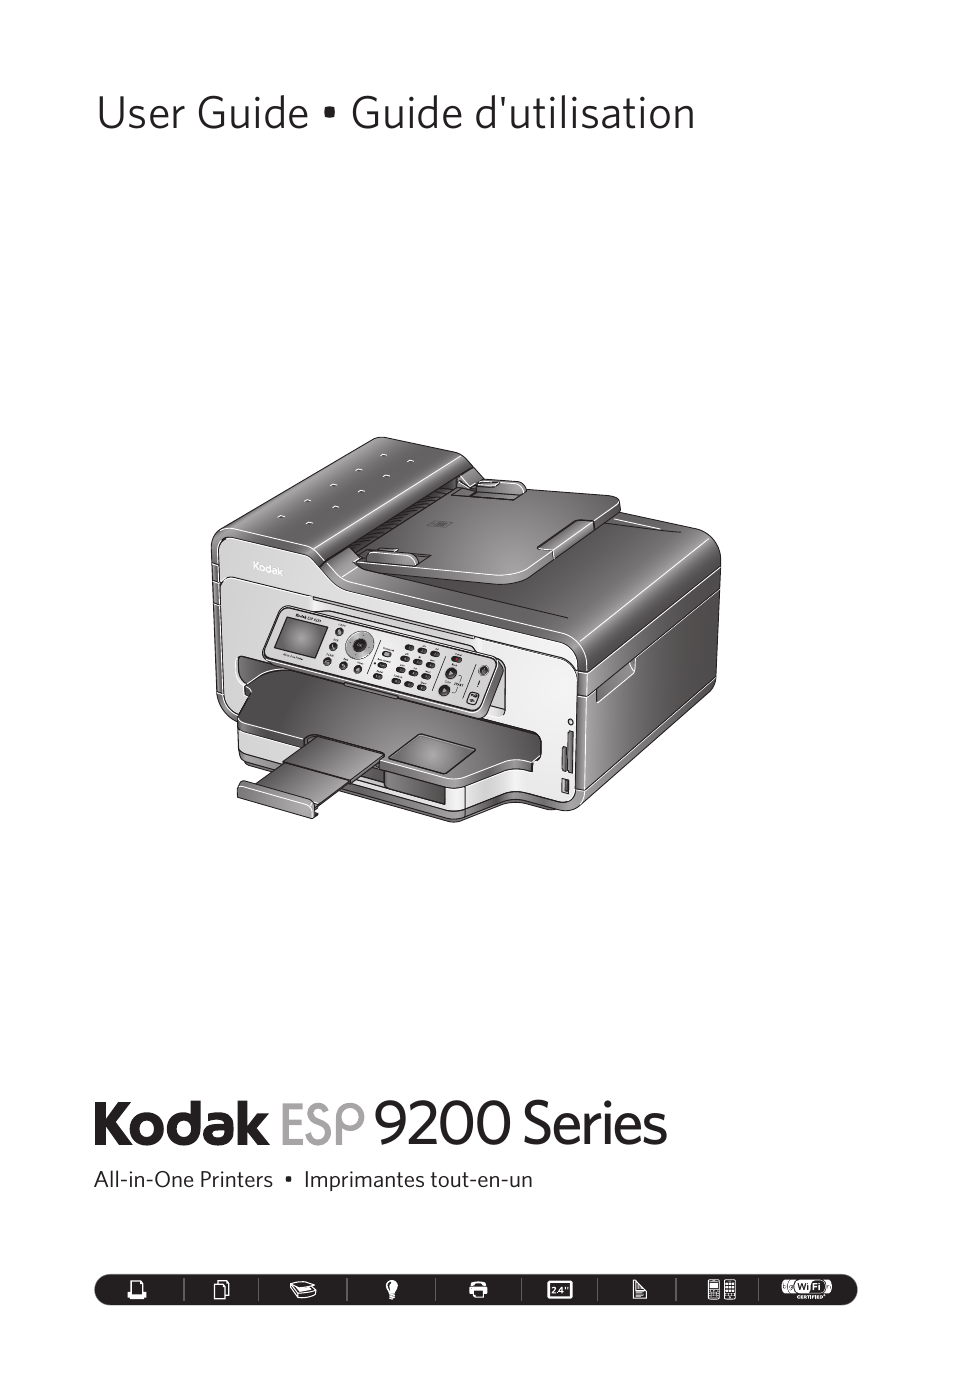 Kodak esp 3 printer download